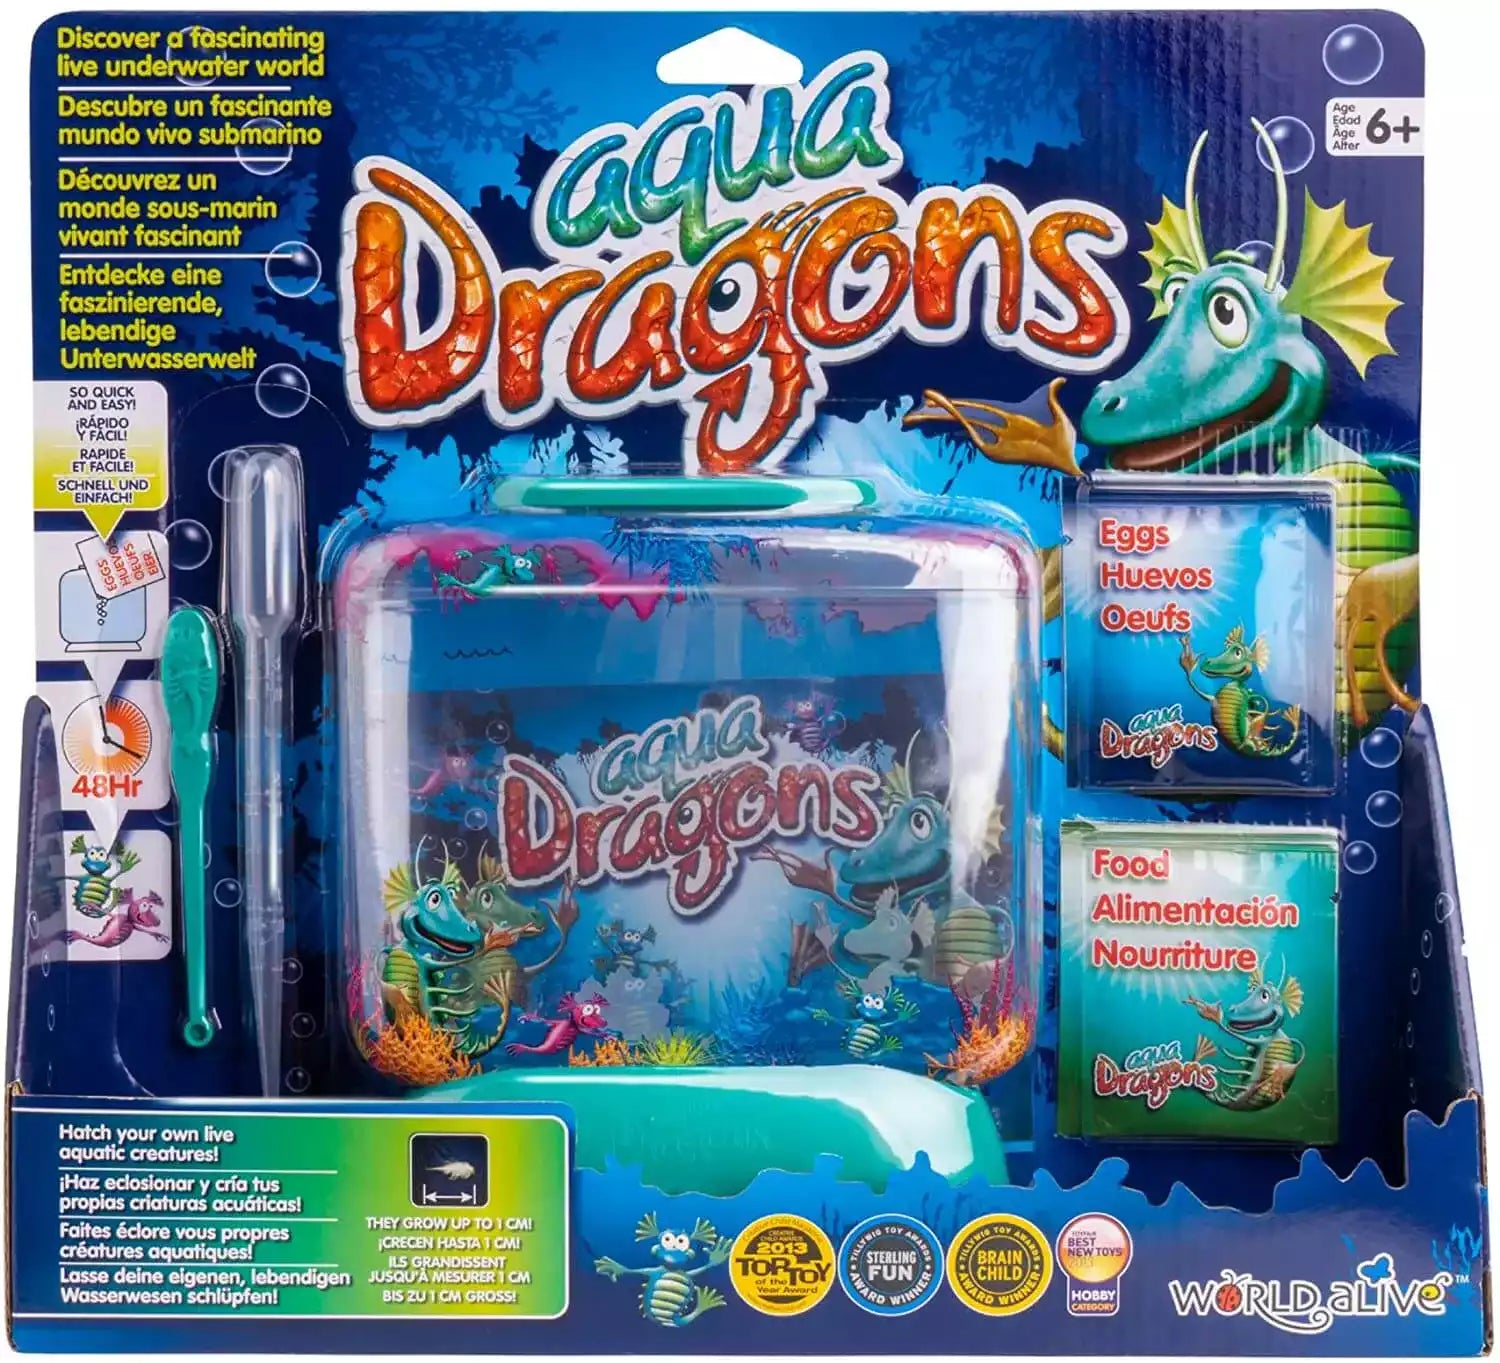 Aqua Dragons Science toys